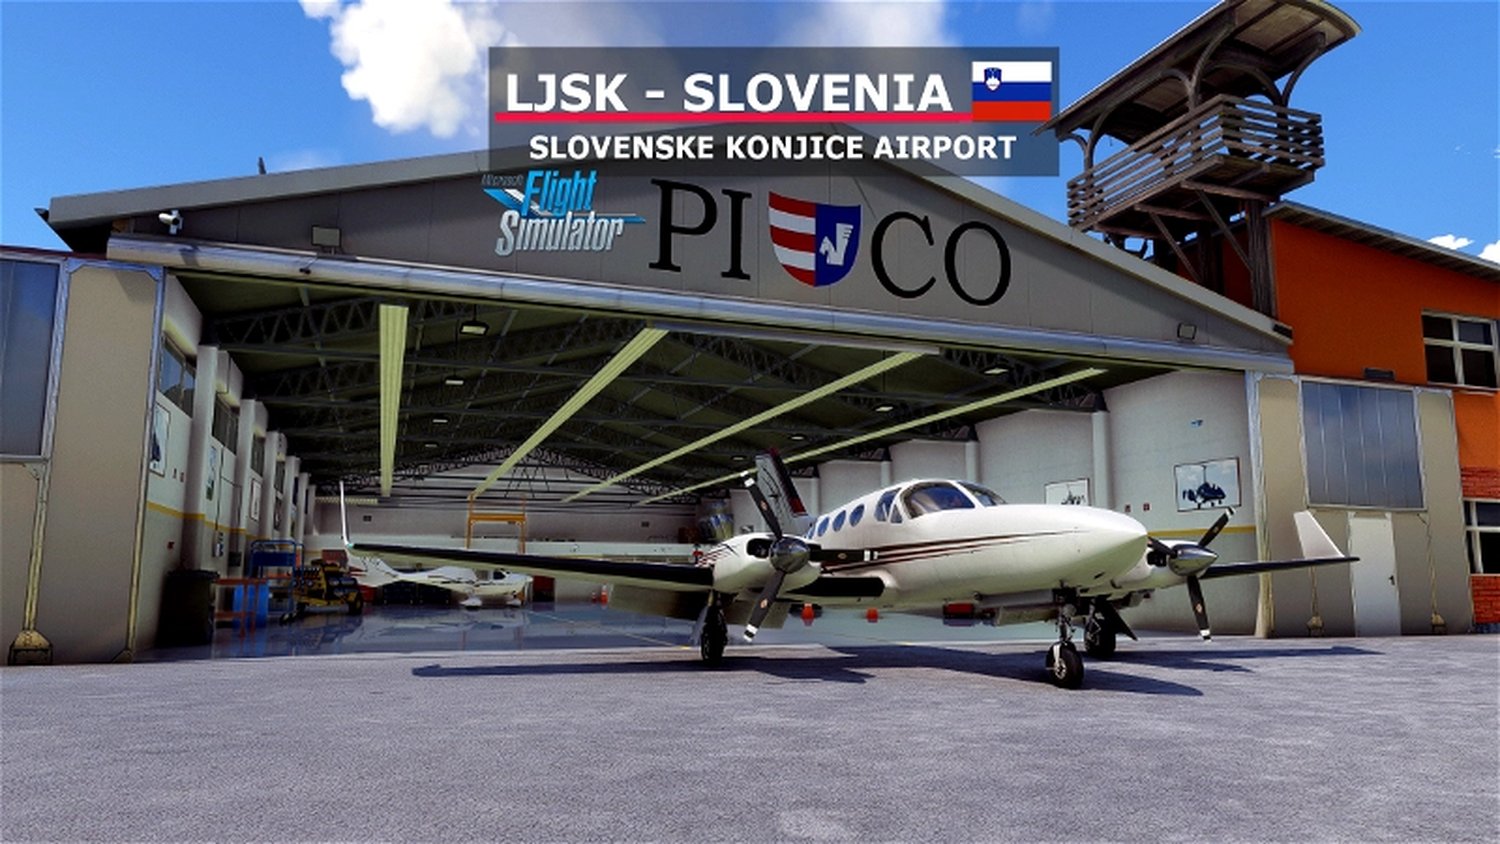 LJSK Slovenske Konjice, Slovenia (neptune11)